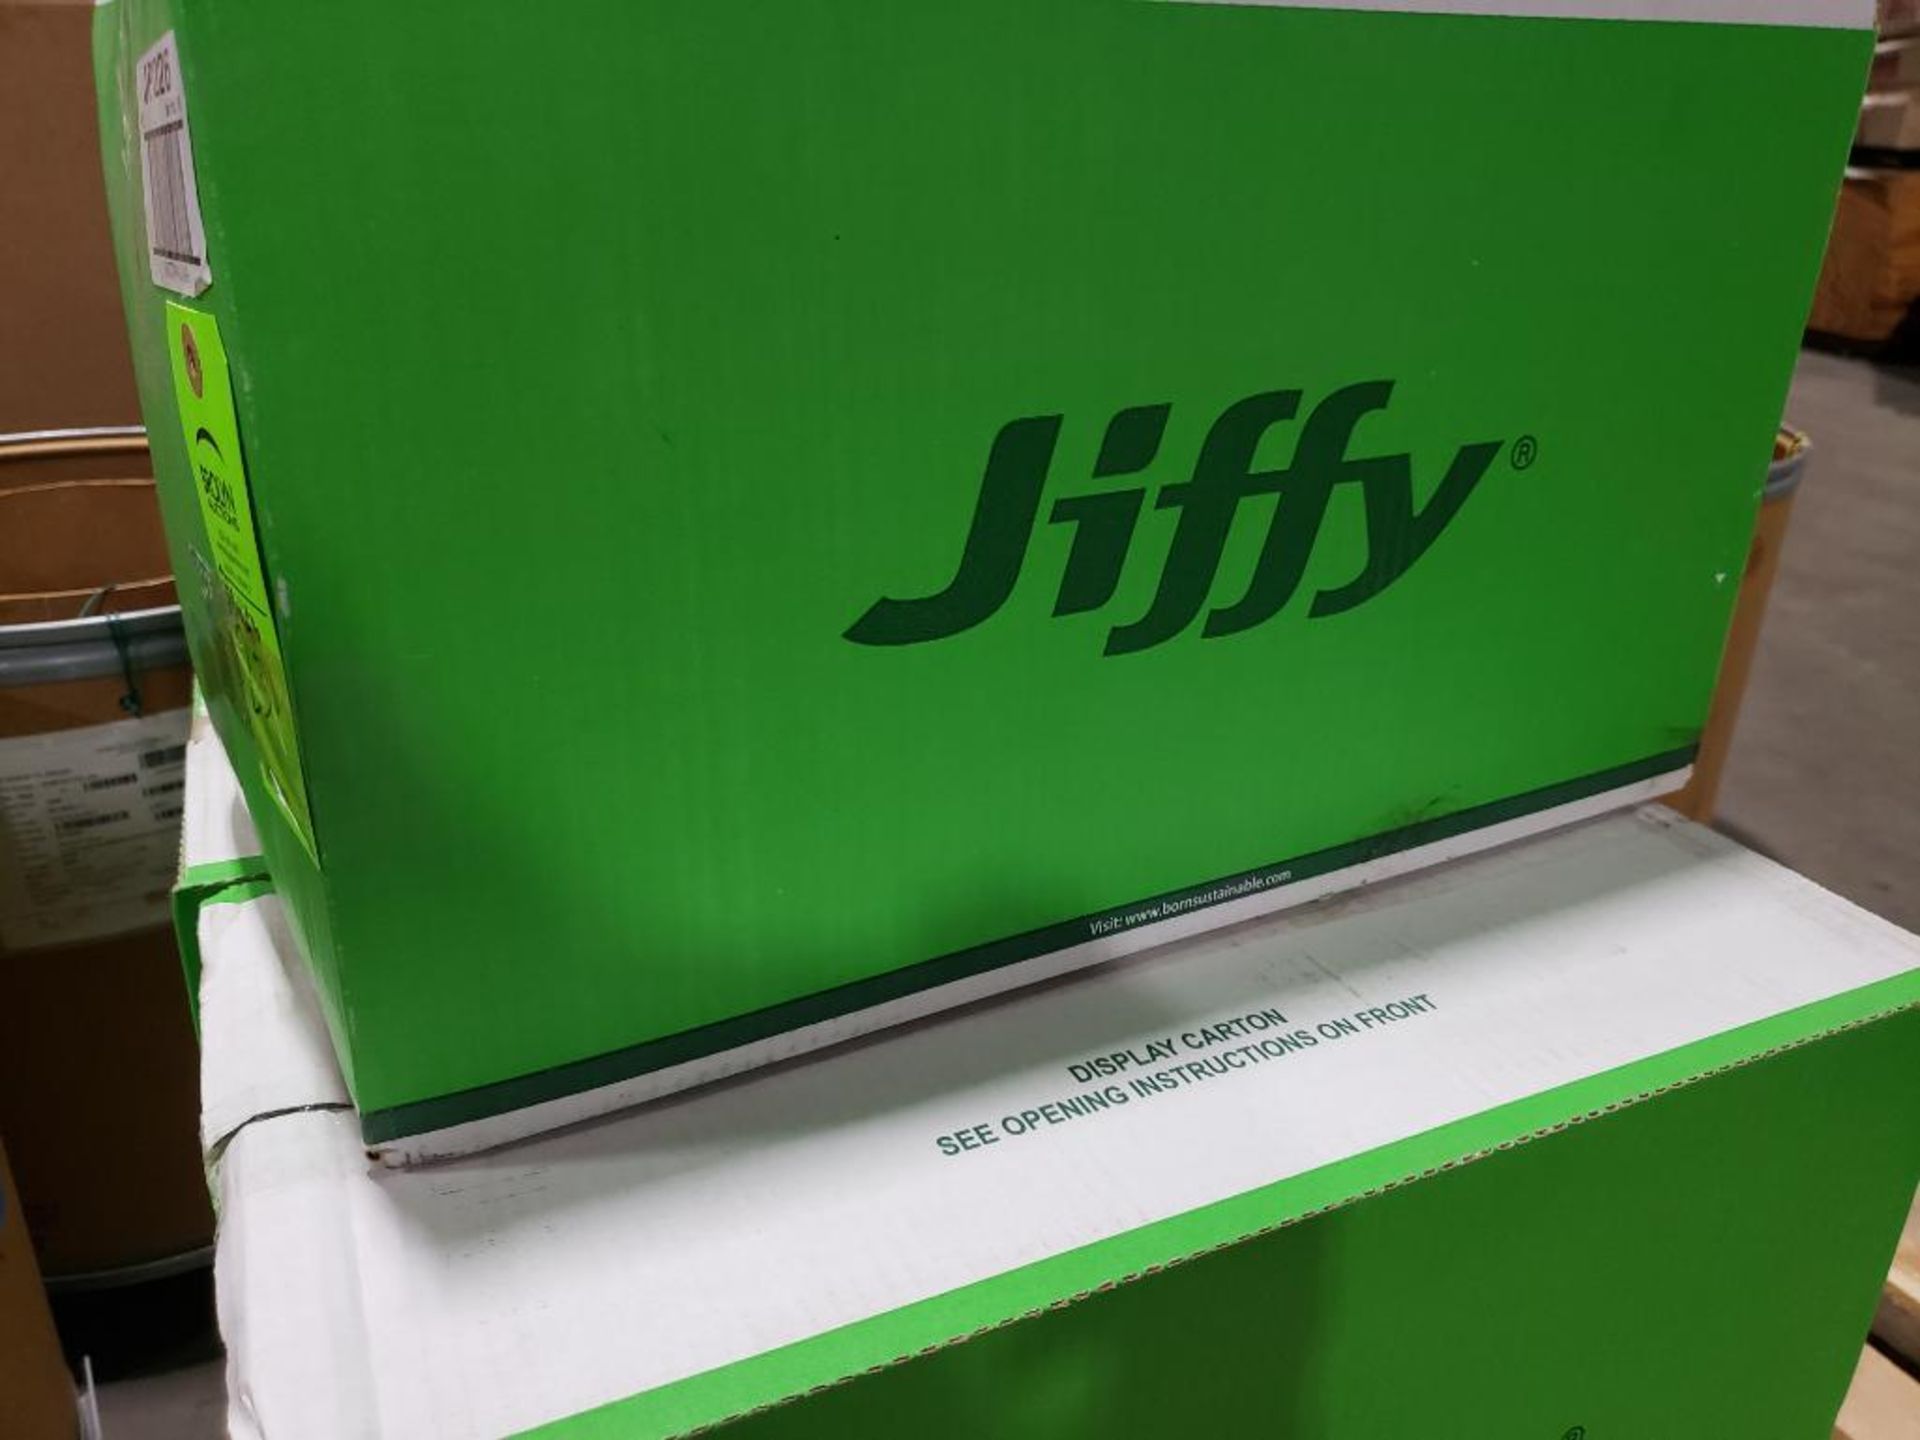 Qty 80 - Jiffy greenhouse starter kits. - Image 2 of 5